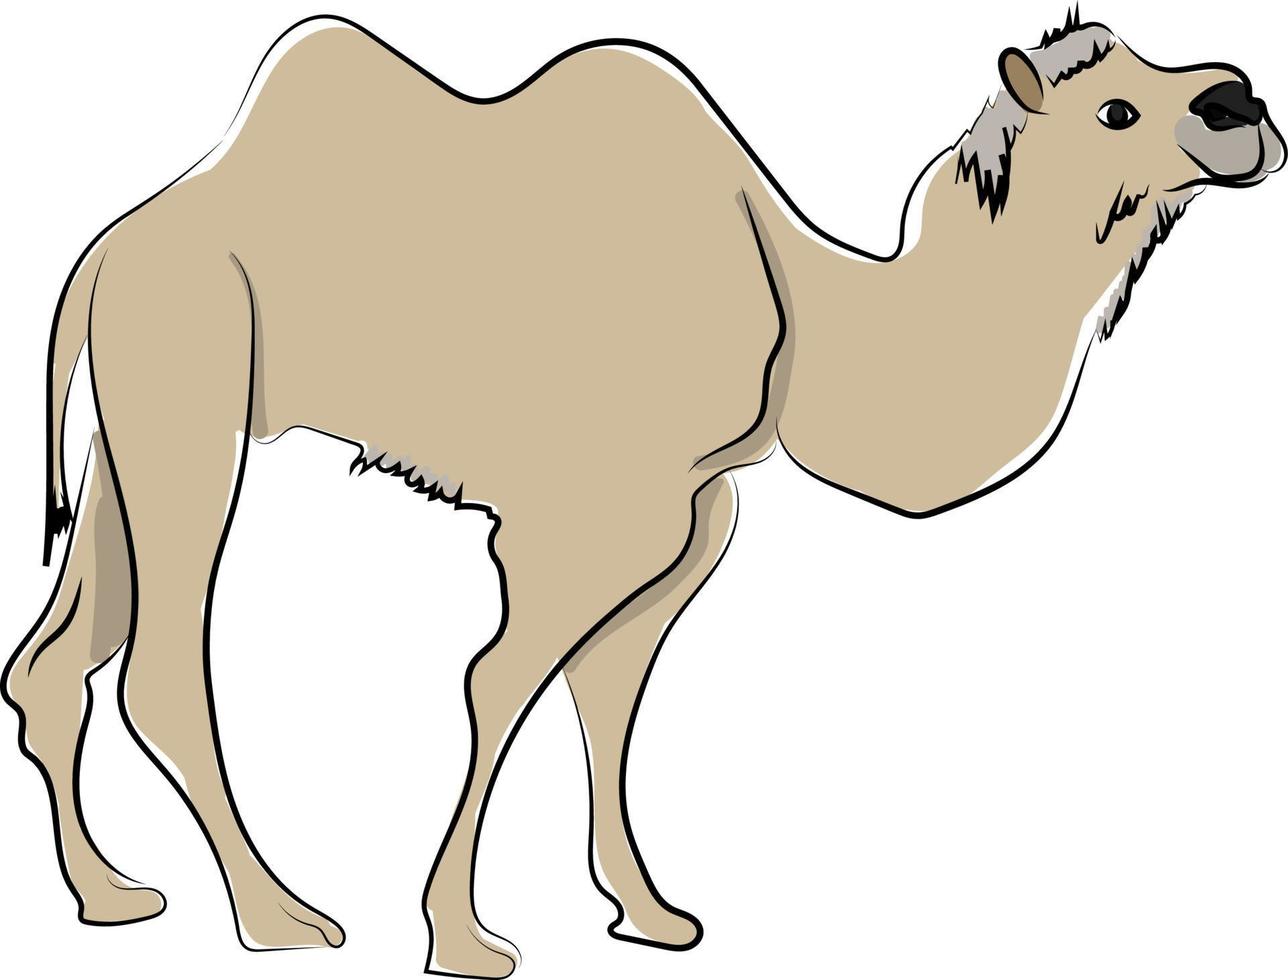 Camel in desert, illustration, vector on white background.